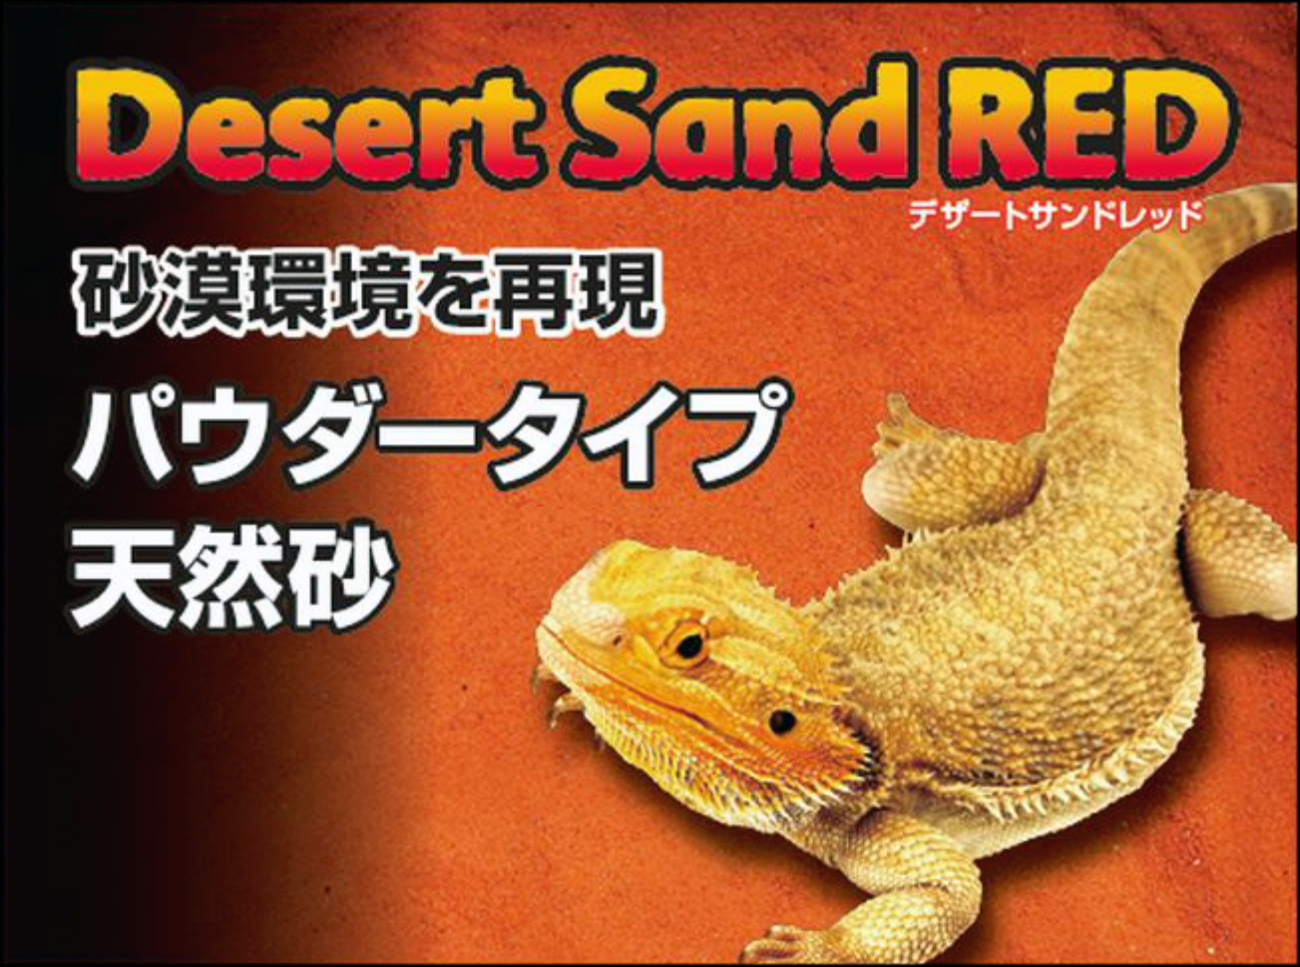 デザートサンドレッド3kg GEX エキゾテラ 砂漠環境用床材 販売 通販